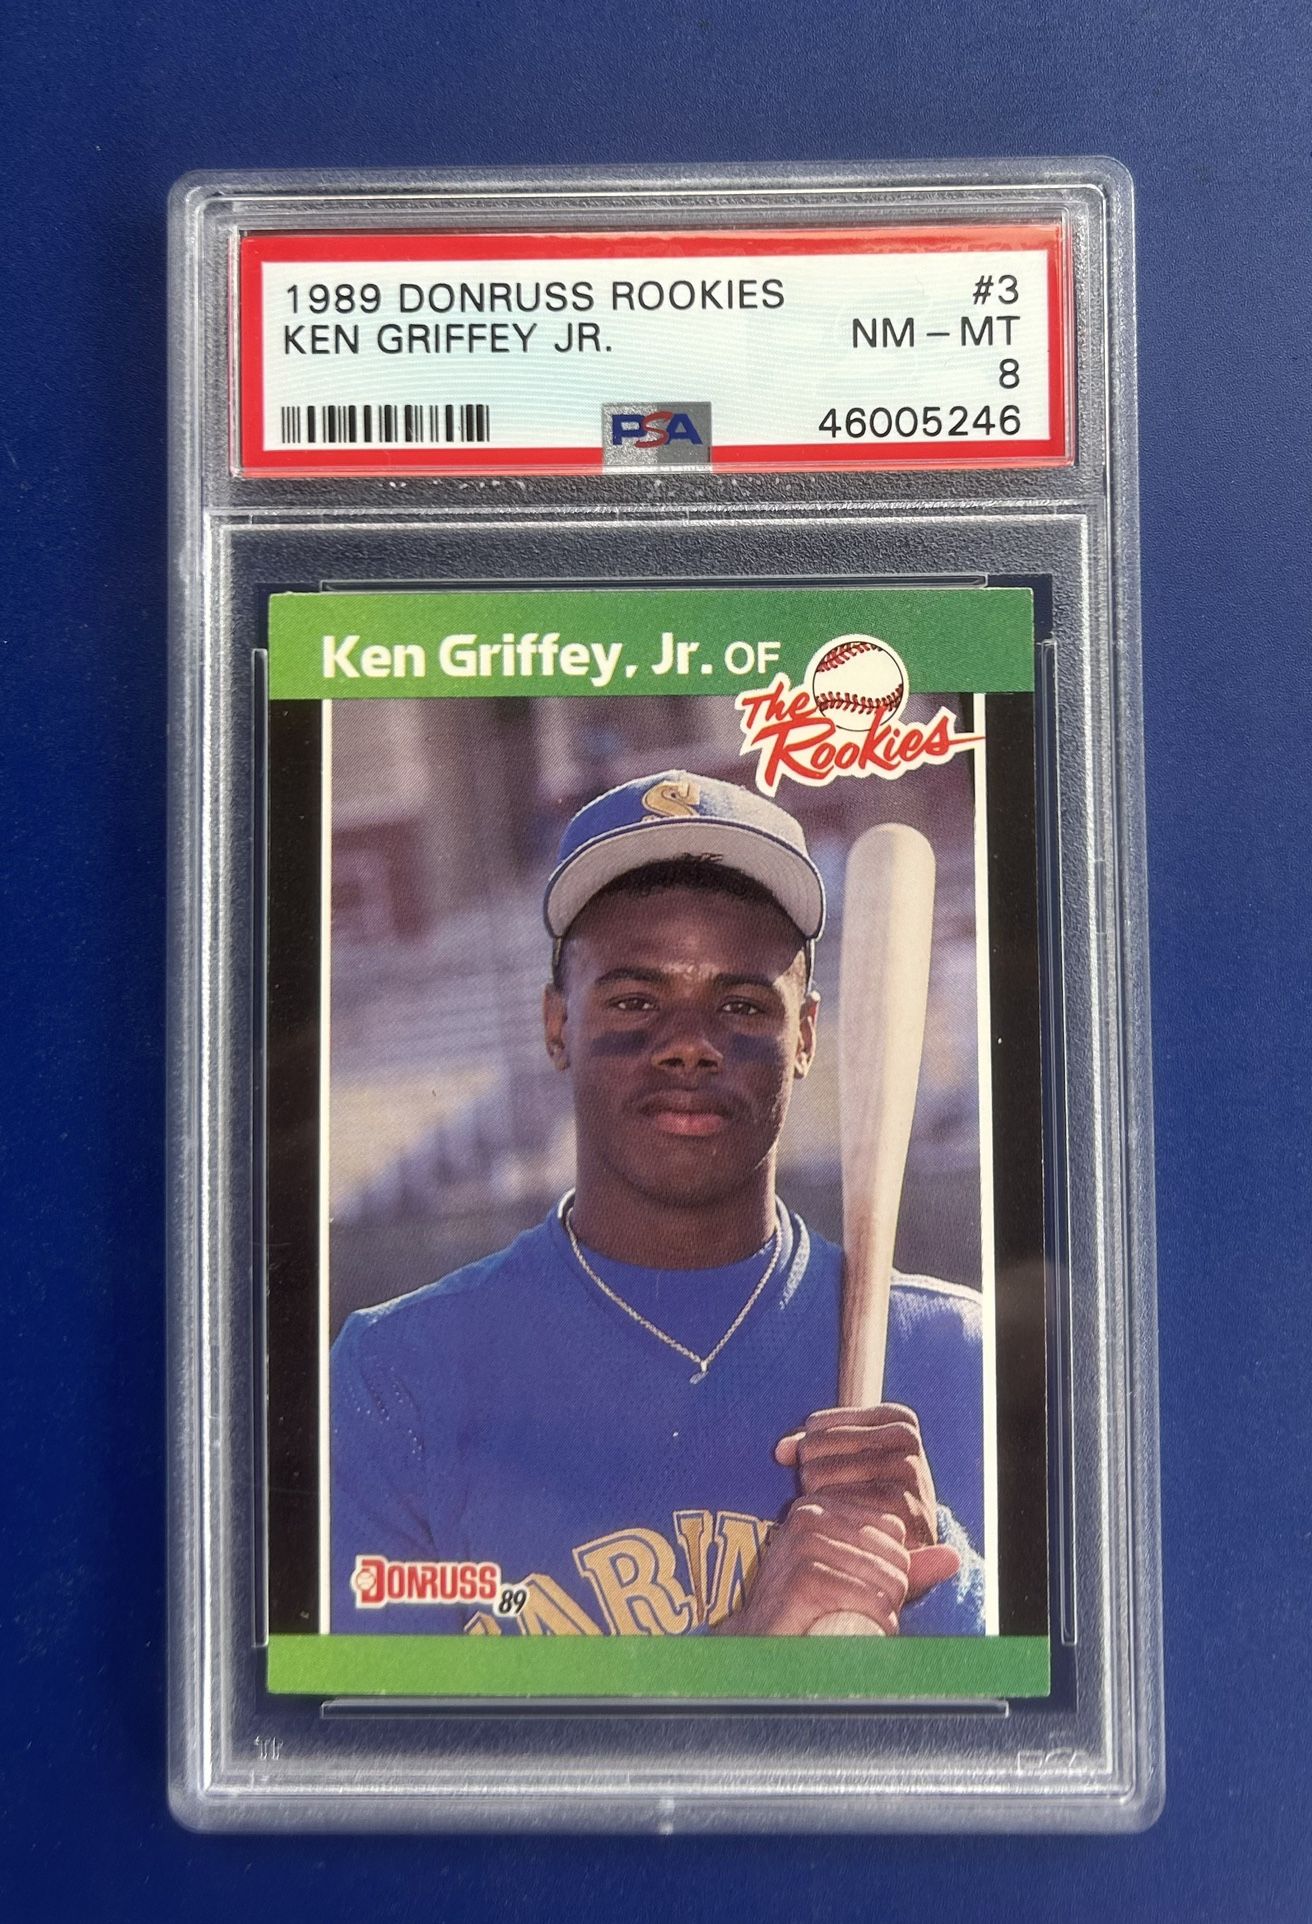 1989 Donruss Ken Griffey Jr Rookie Baseball Card Graded PSA 8